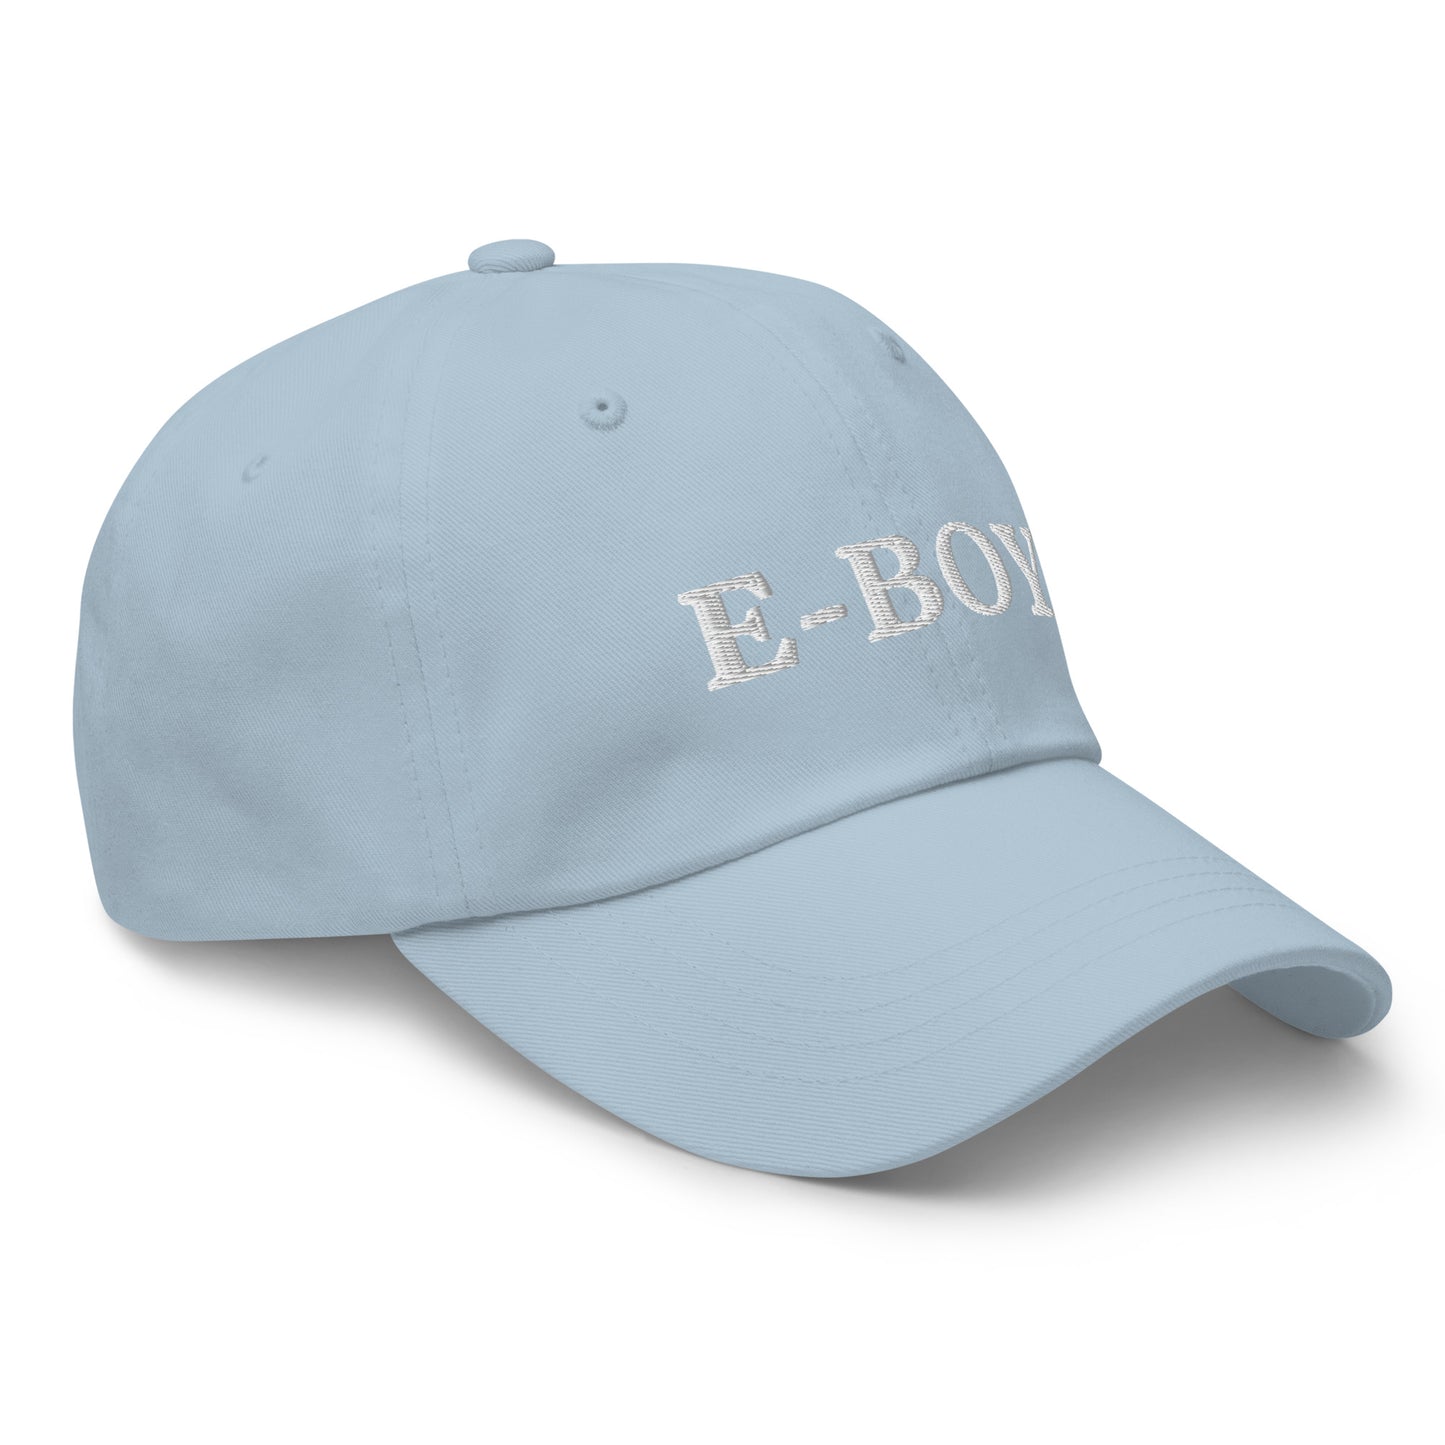 E BOY CAP